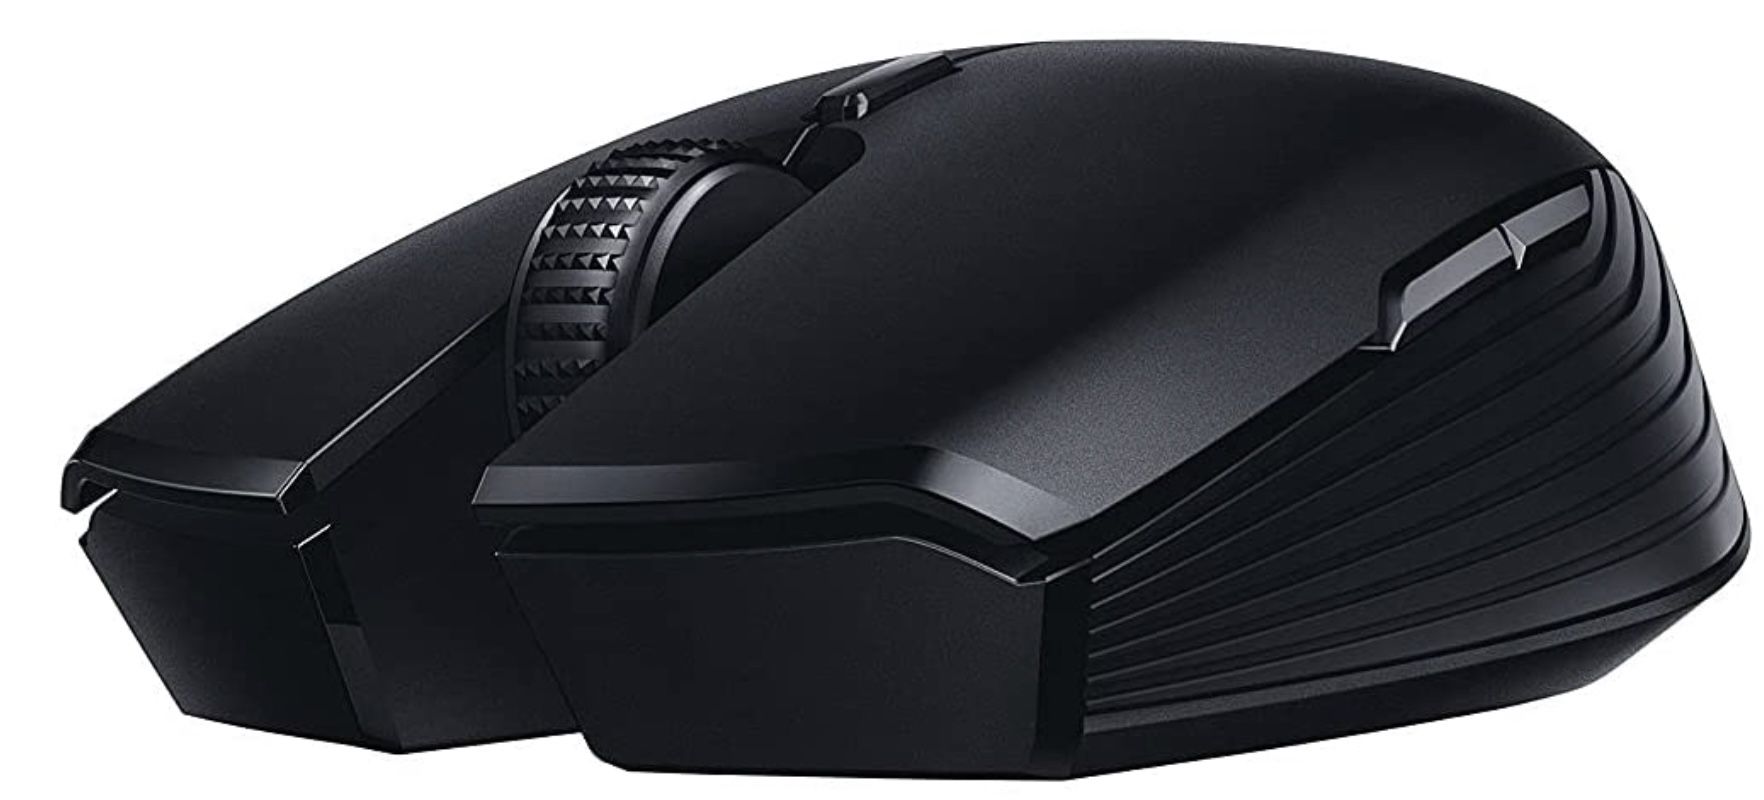 Razer Atheris kabellose Gaming Maus in Schwarz für 36,98€ (statt 42€)